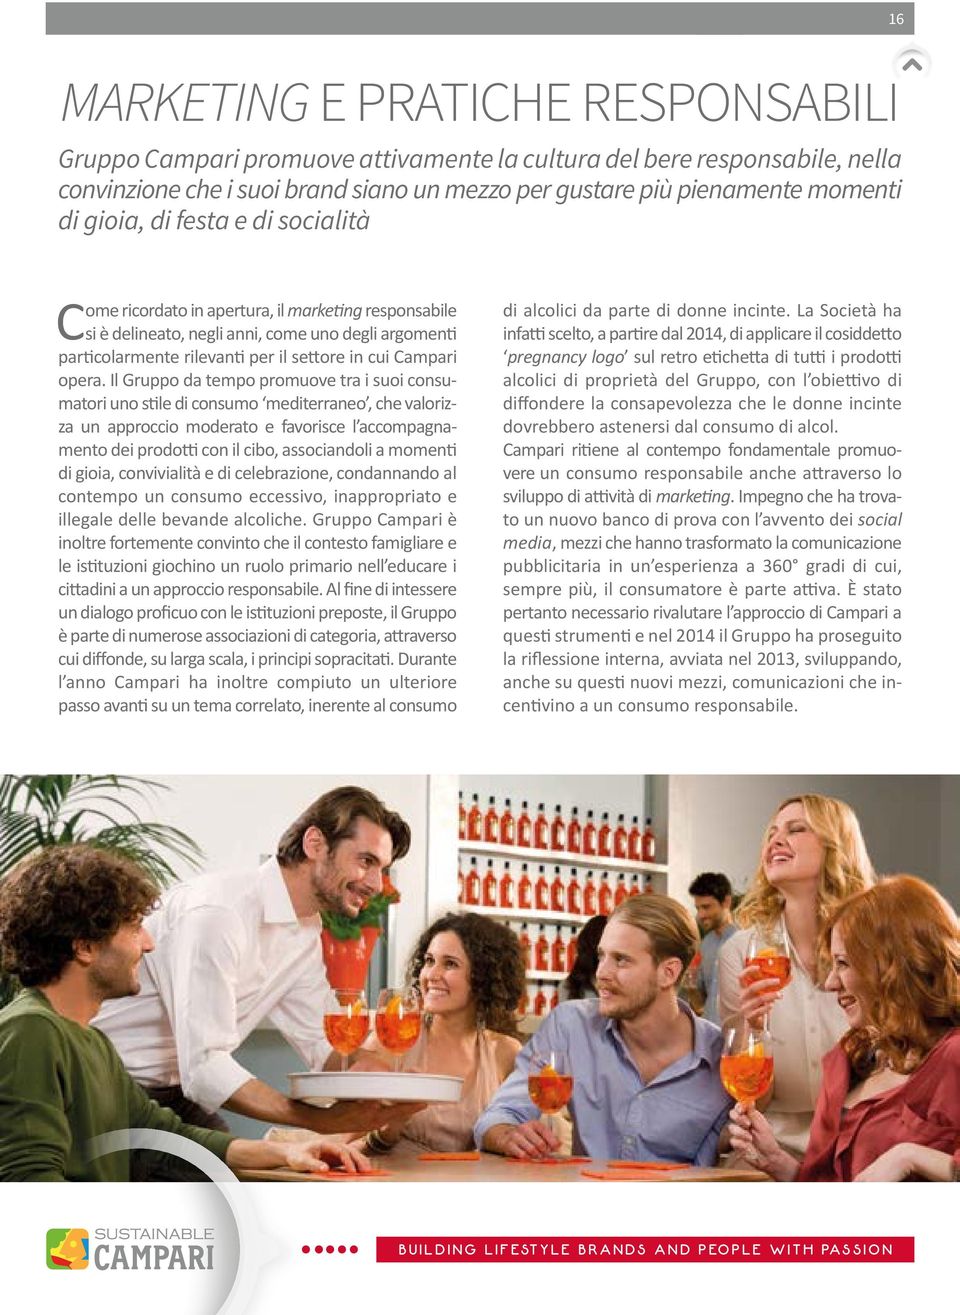 Il Gruppo da tempo promuove tra i suoi consumatori uno stile di consumo mediterraneo, che valorizza un approccio moderato e favorisce l accompagnamento dei prodotti con il cibo, associandoli a